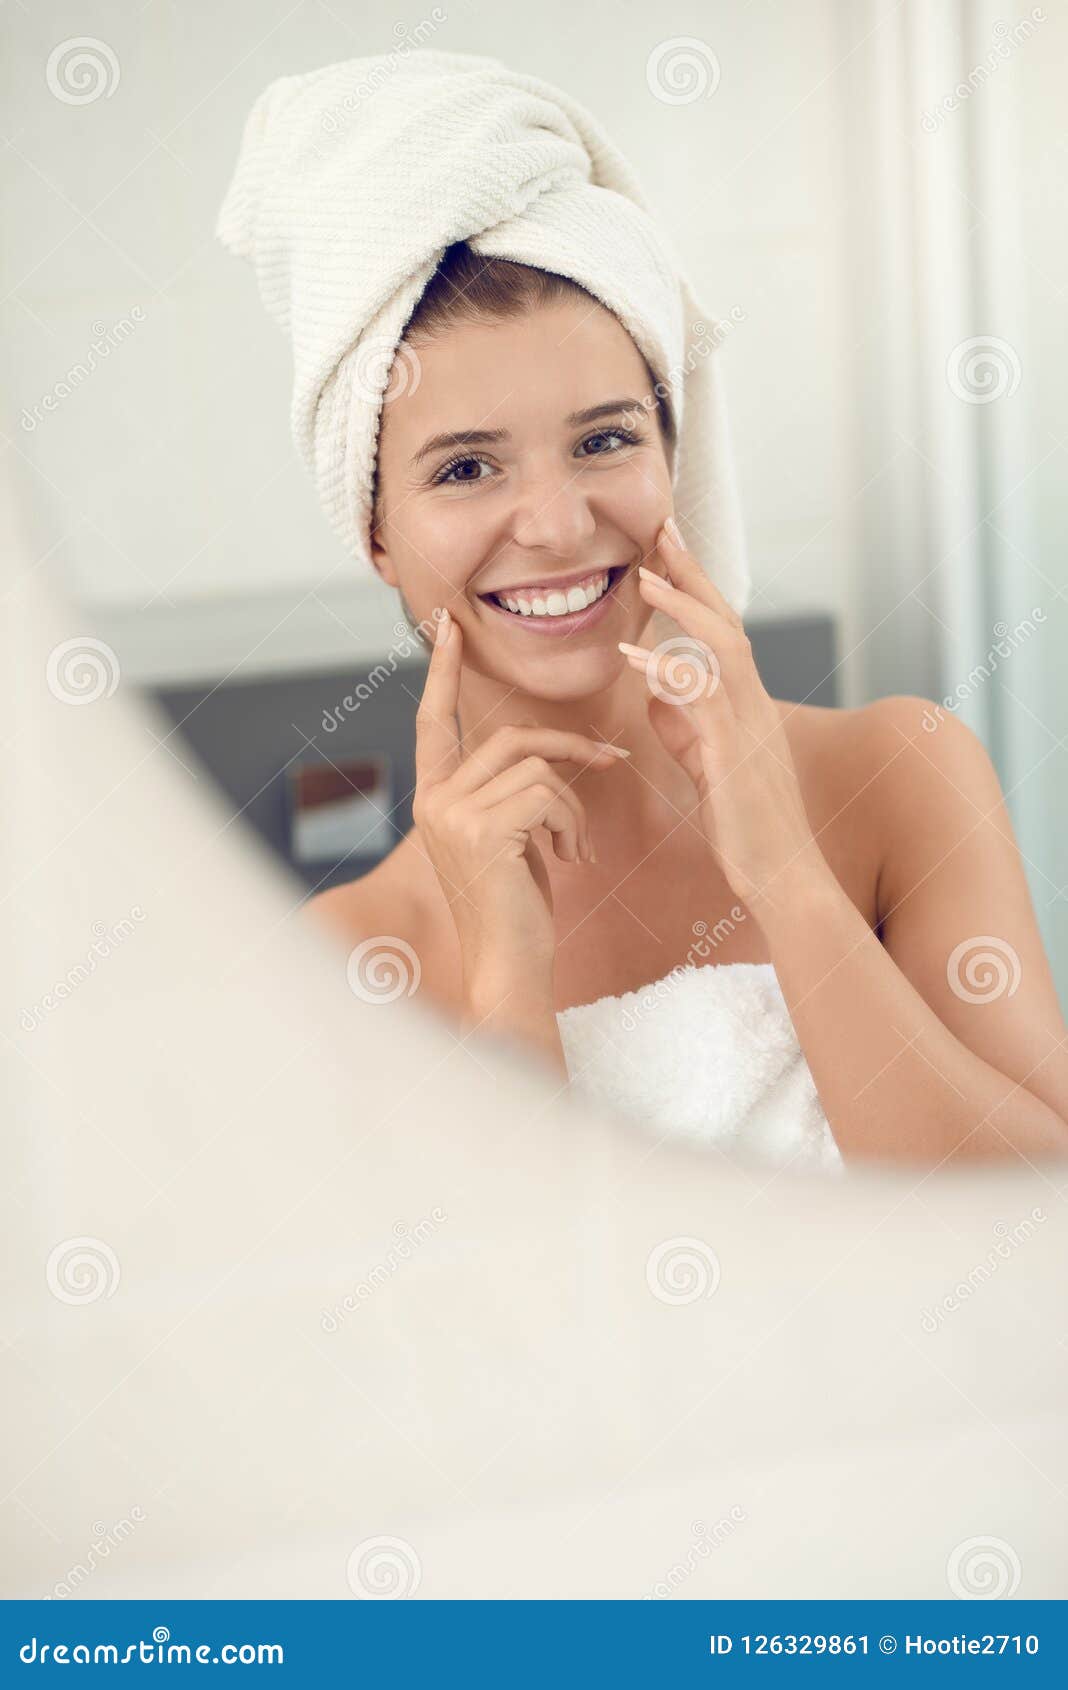 Жена после ванны. Красивая девушка в полотенце. Улыбающаяся девушка в полотенце. Девушка после душа. Молодые девушки в полотенце.